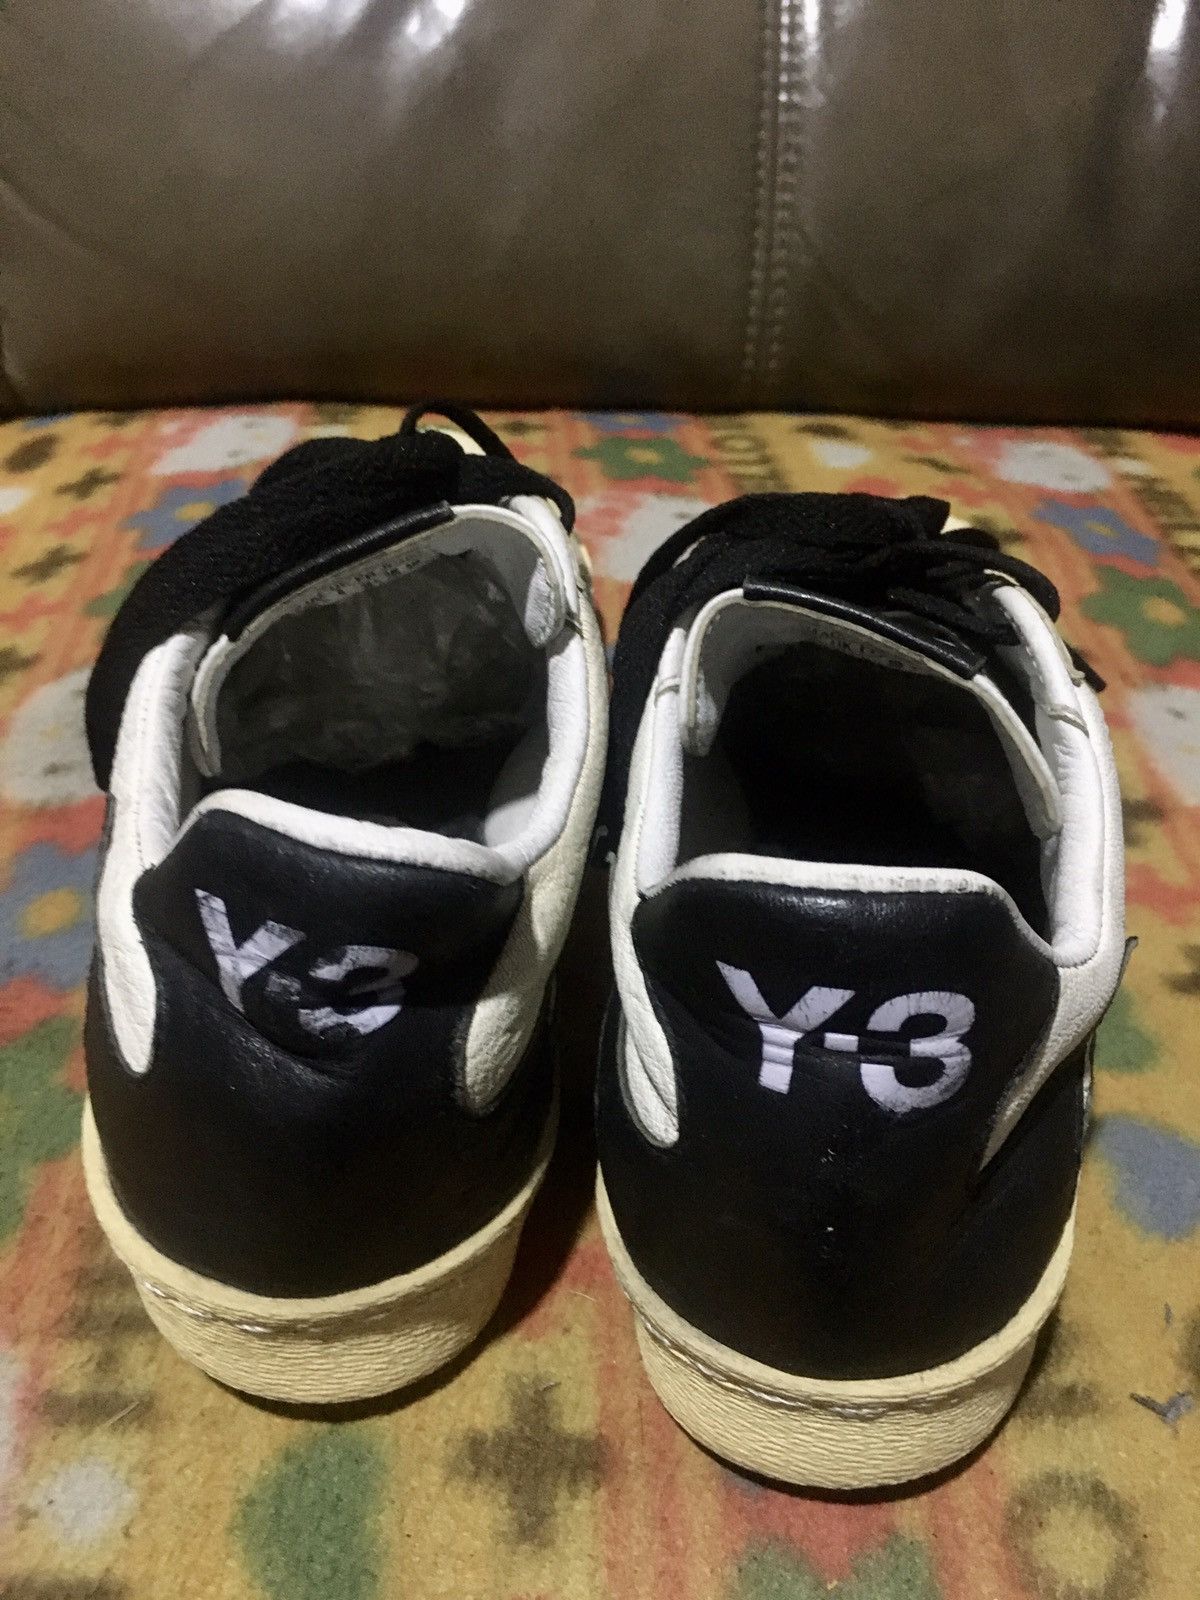 Adidas Yohji Yamamoto Sneakers Size US 6.5 / EU 39-40 - 3 Thumbnail